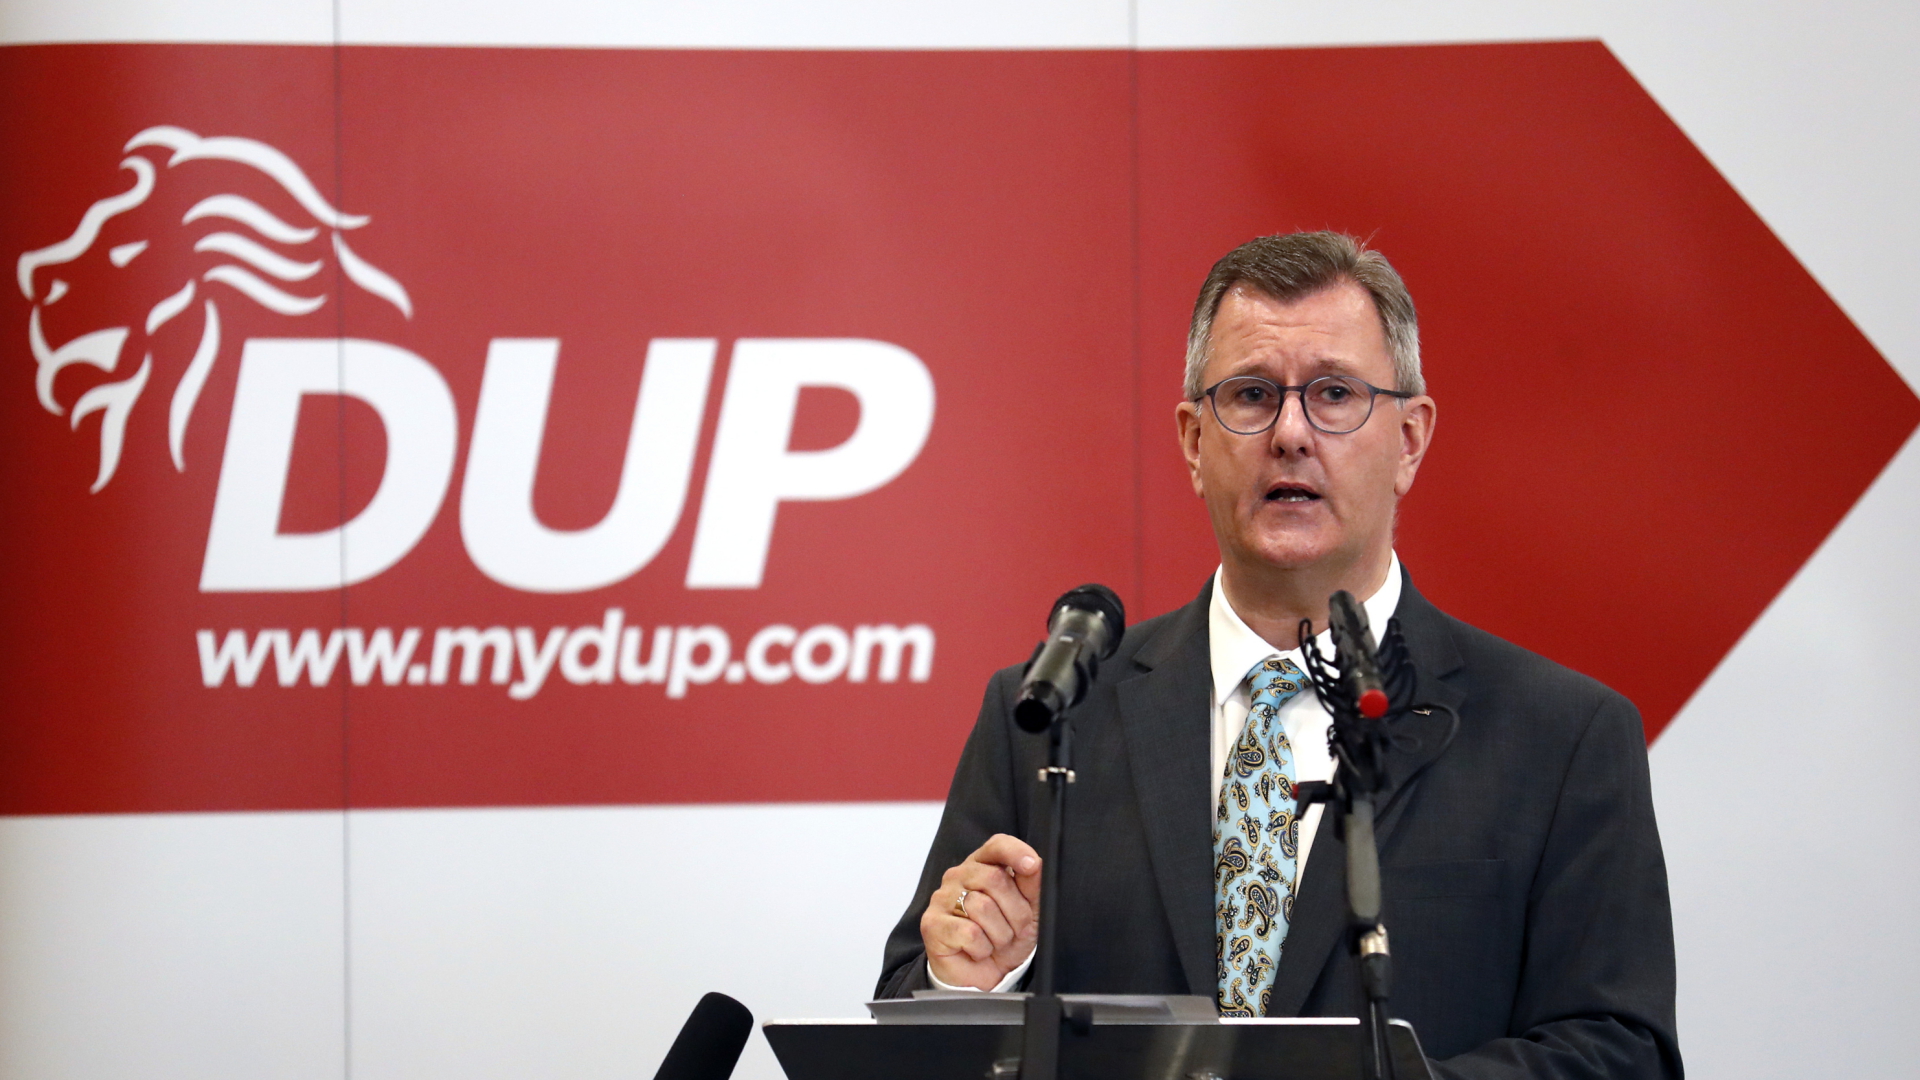 Jeffrey Donaldson, Vorsitzender der Democratic Unionist Party (DUP), hält eine Rede vor hochrangigen Parteimitgliedern in Belfast, Großbritannien. | dpa